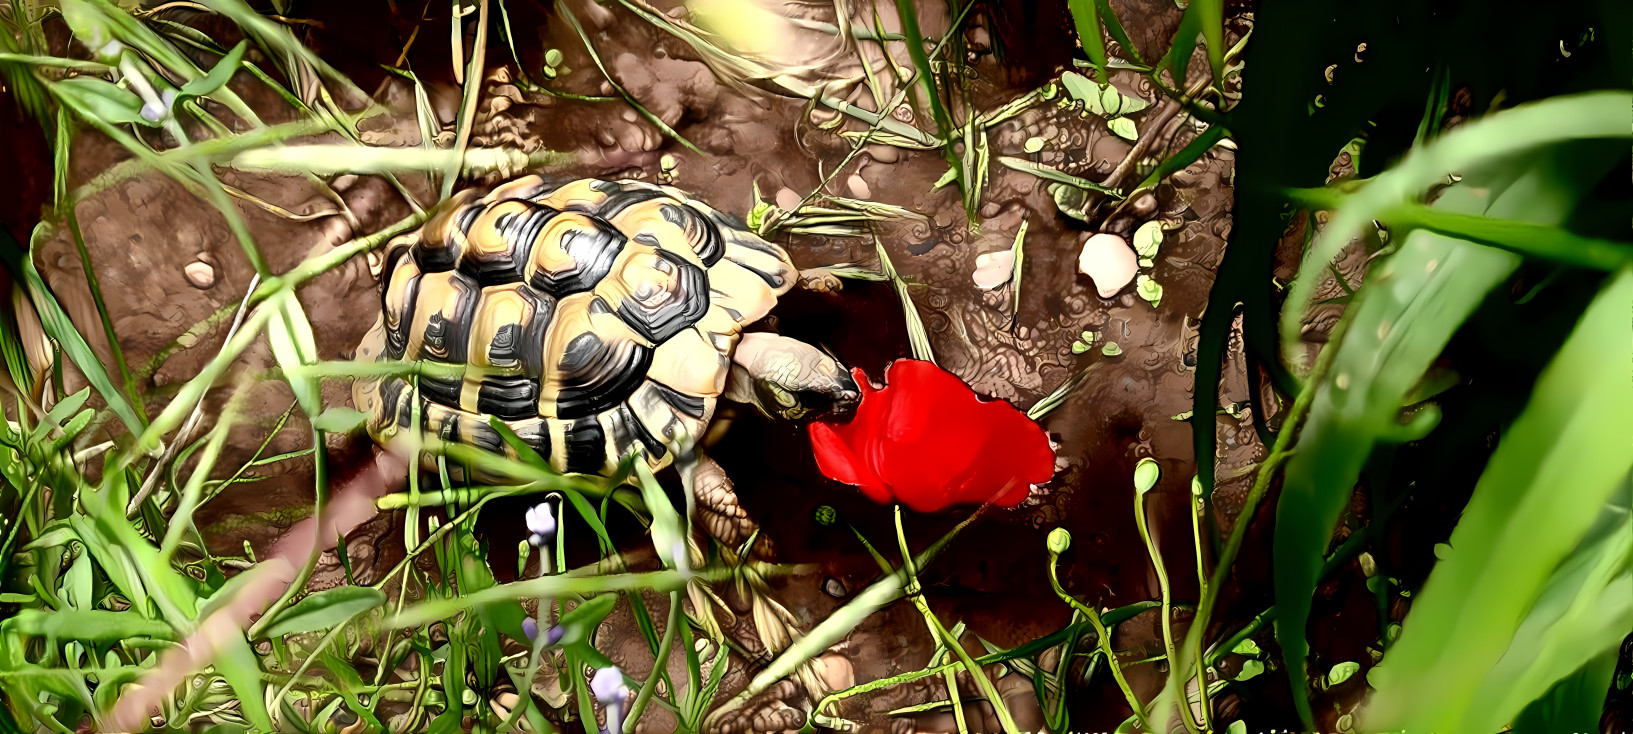 Tortoise eating Flower